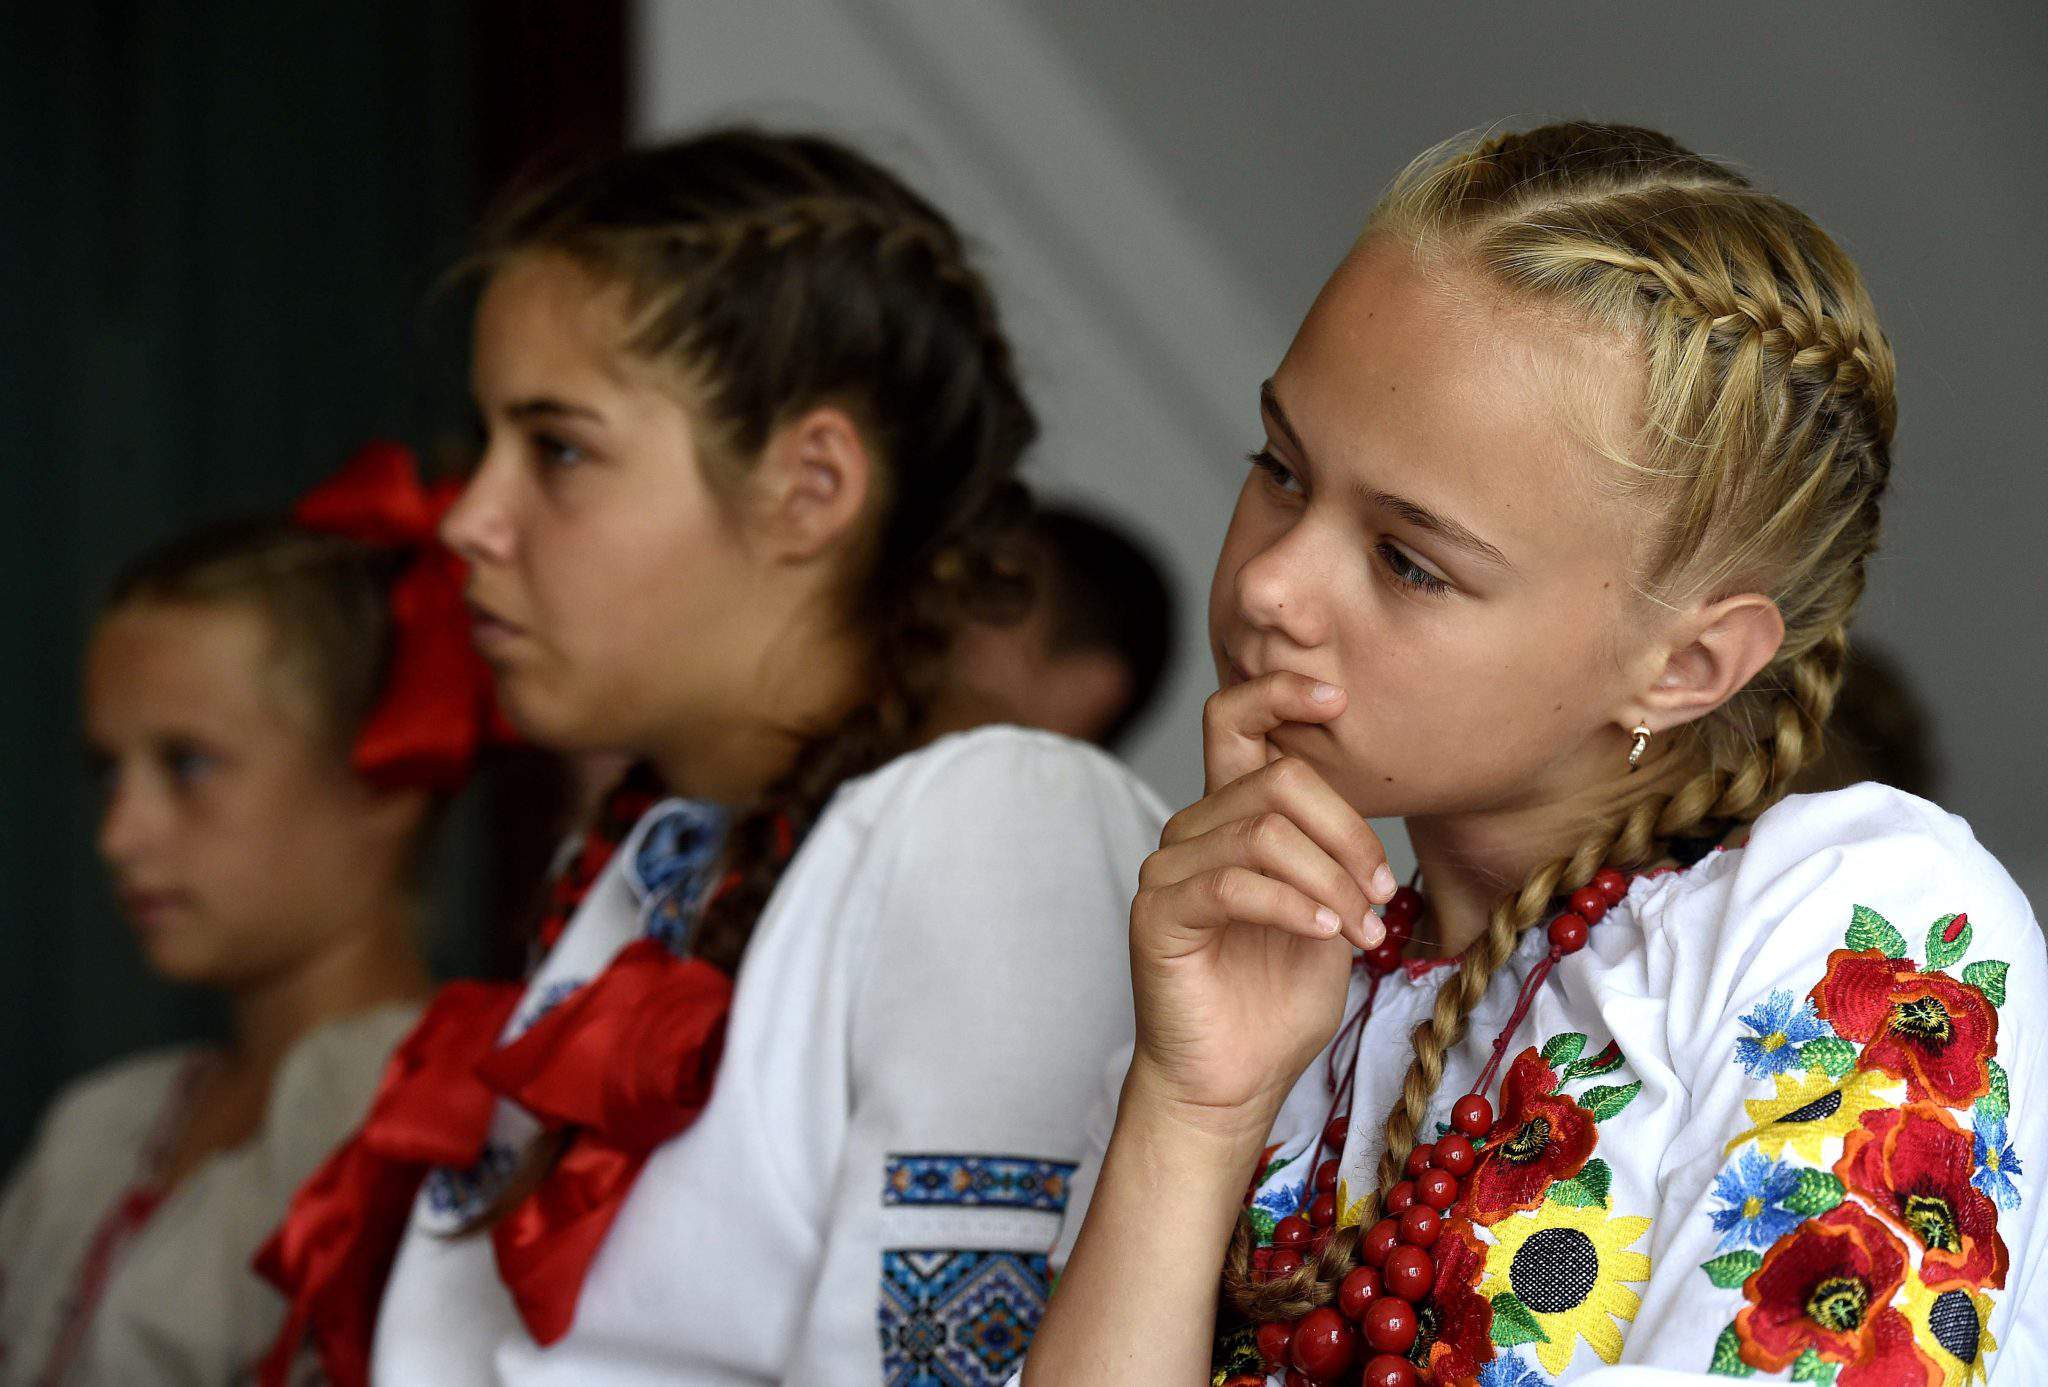 यूक्रेनी बच्चों का समर कैंप